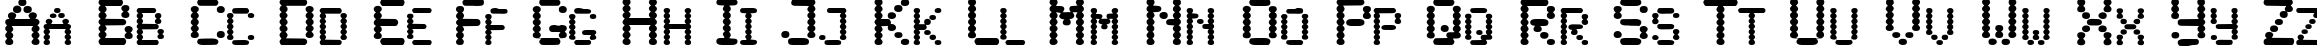 Пример написания английского алфавита шрифтом Lowtech